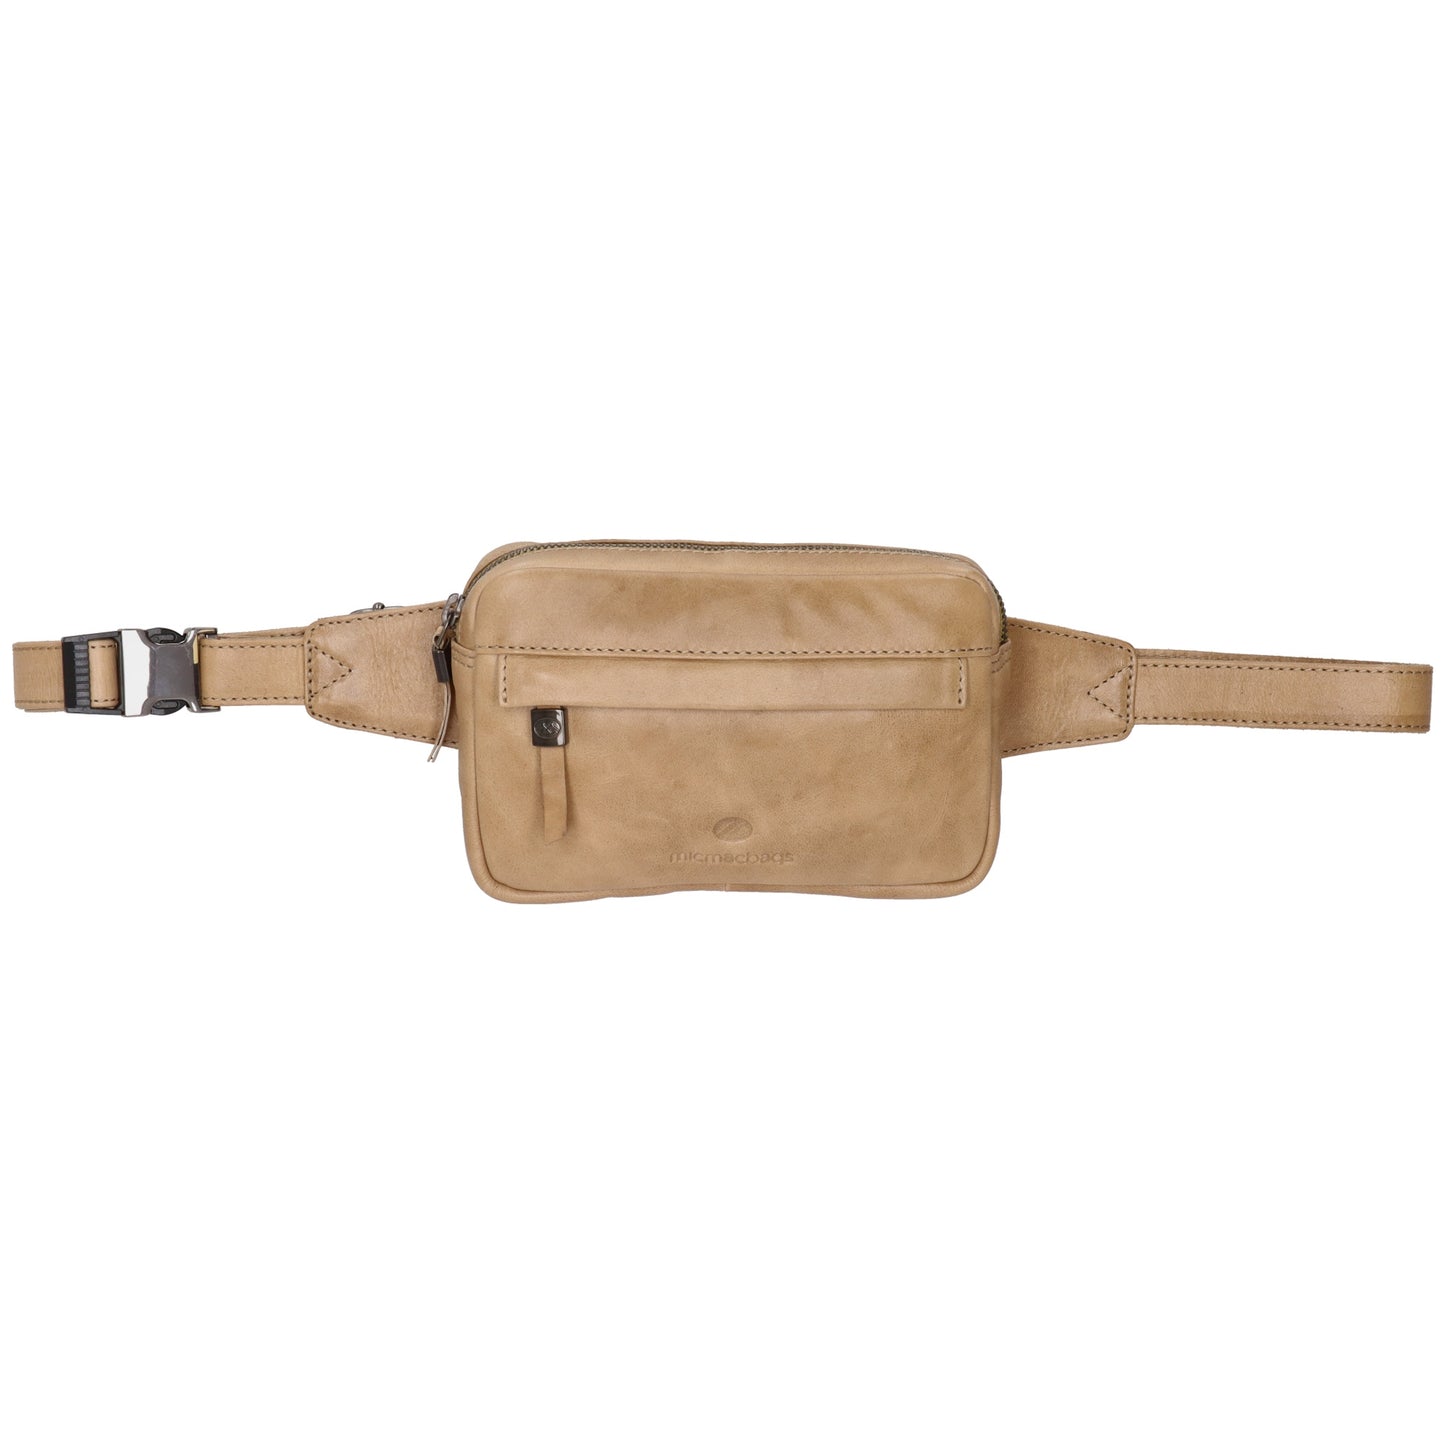 Bodybag|Gürteltasche 19x12cm in Taupe aus Leder